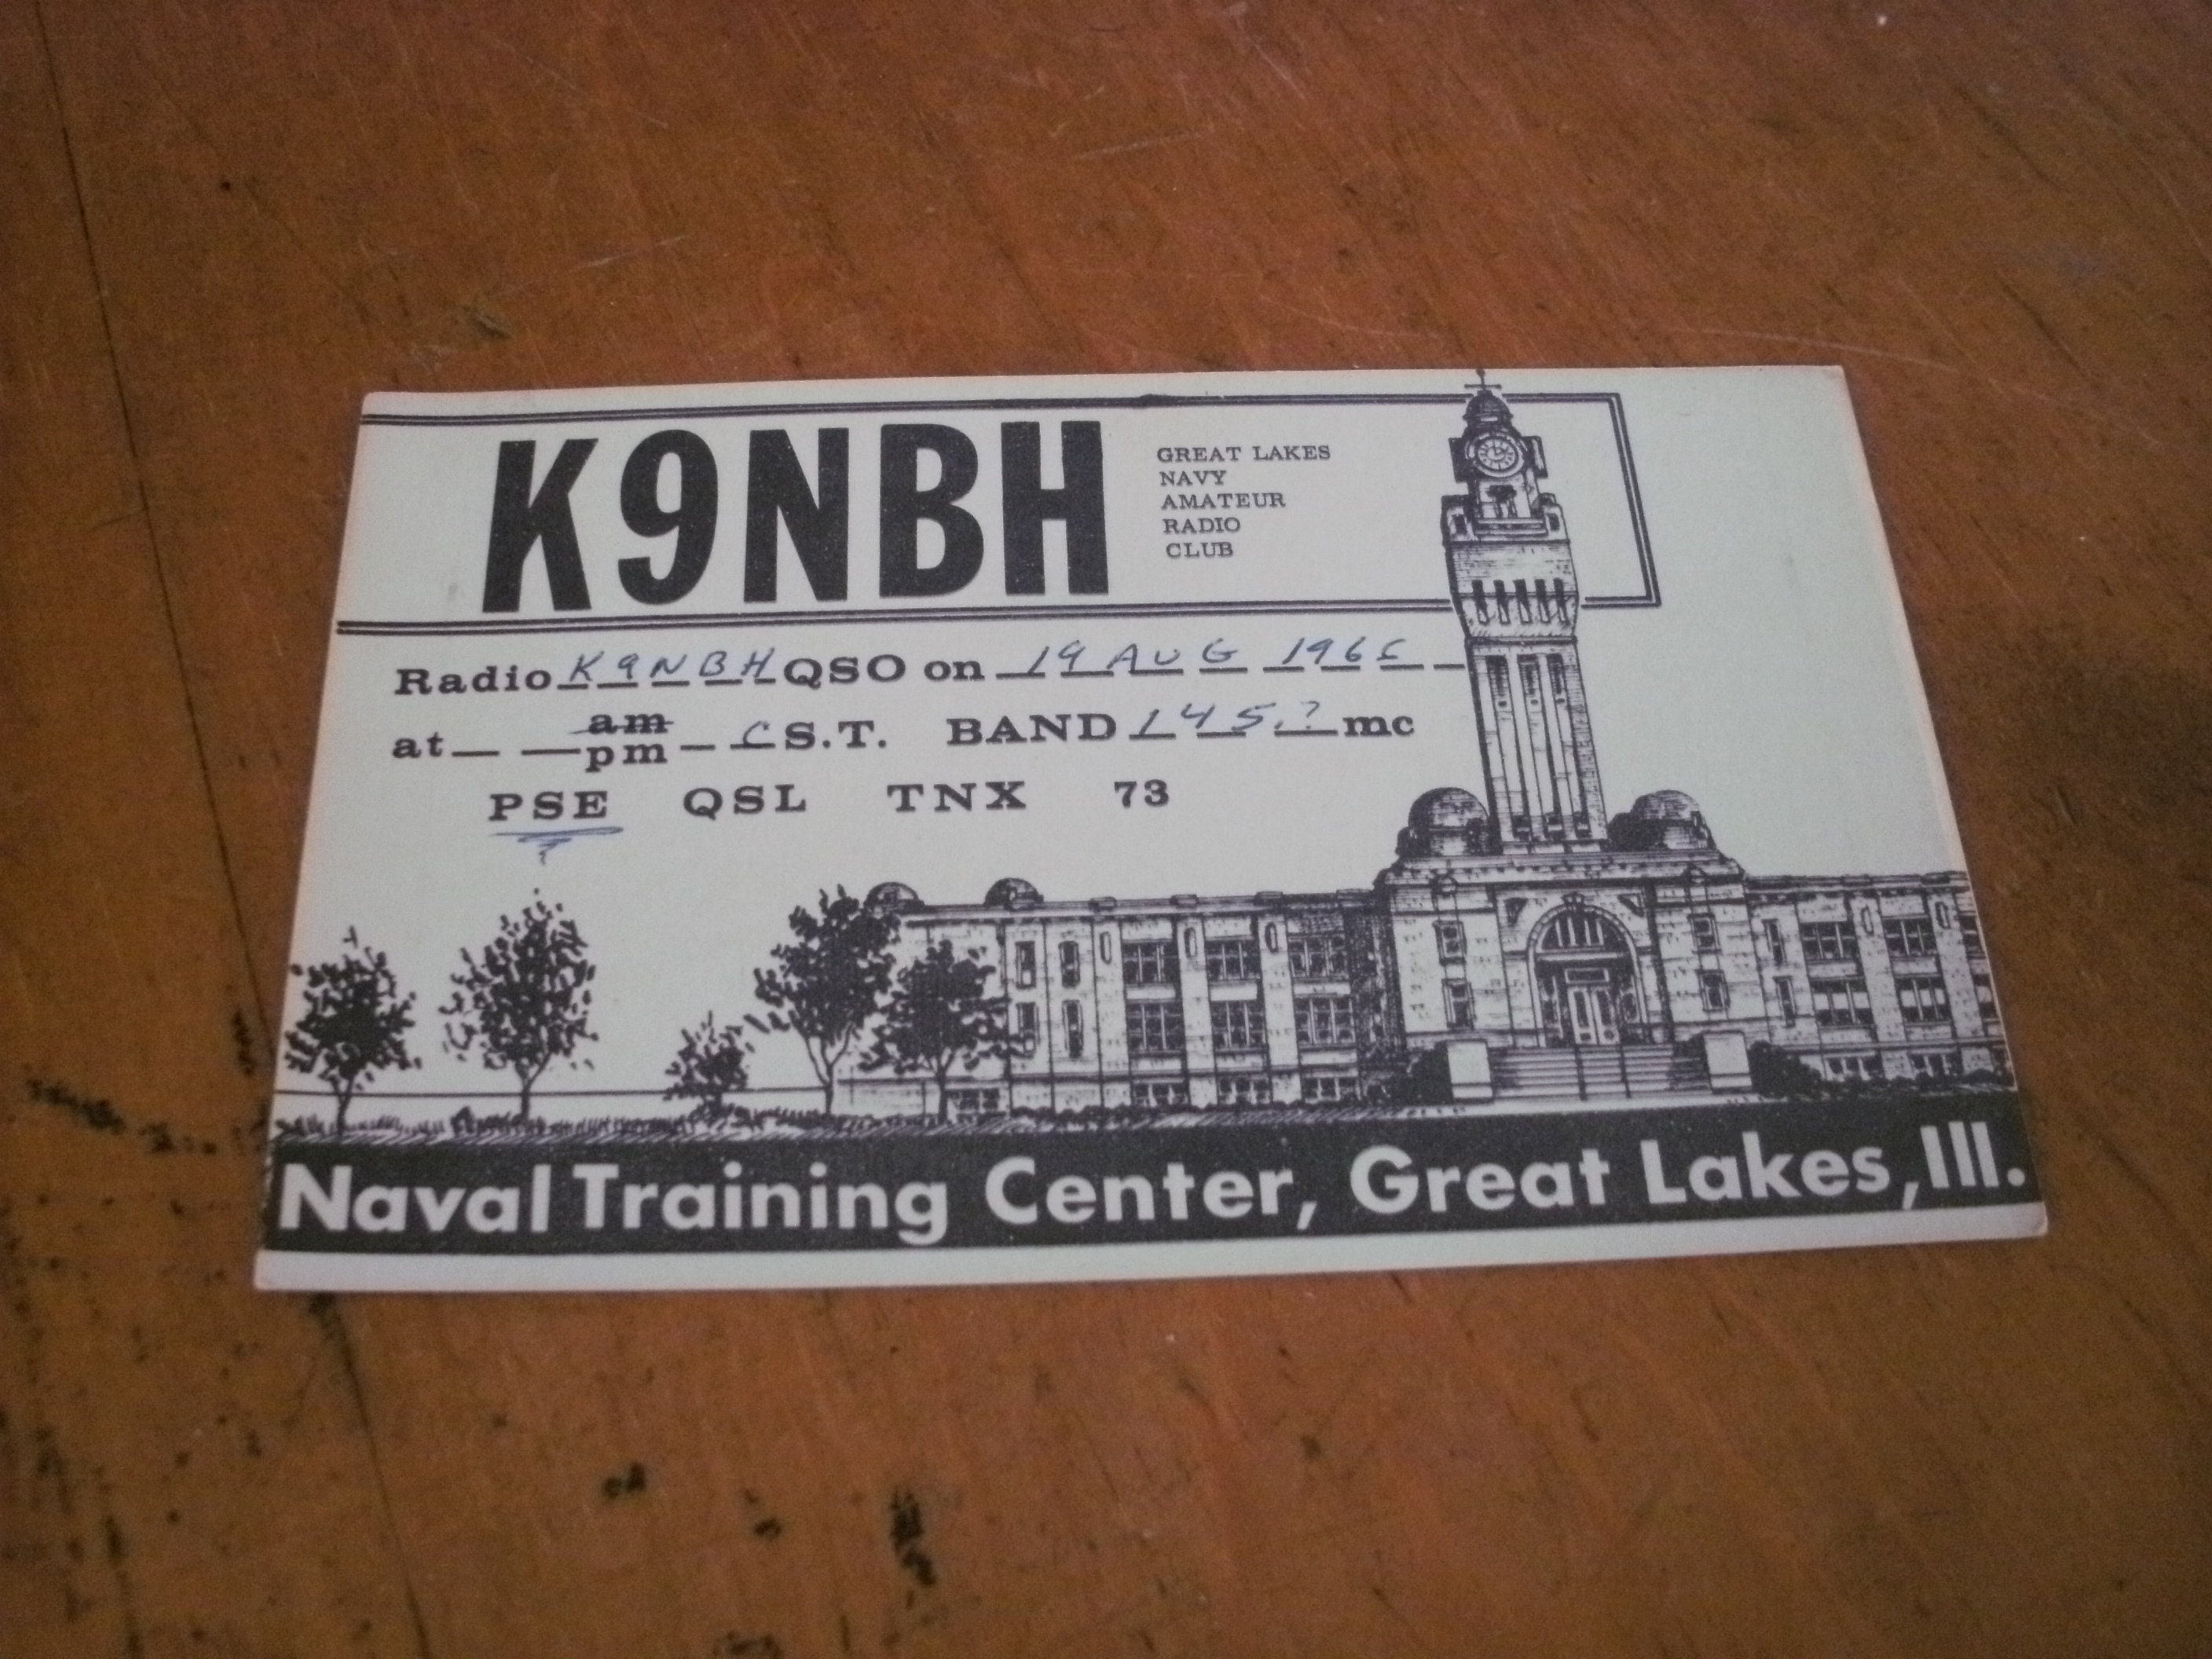 Vietnam Era Ham Radio Great Lakes Naval Training Center Adult Picture